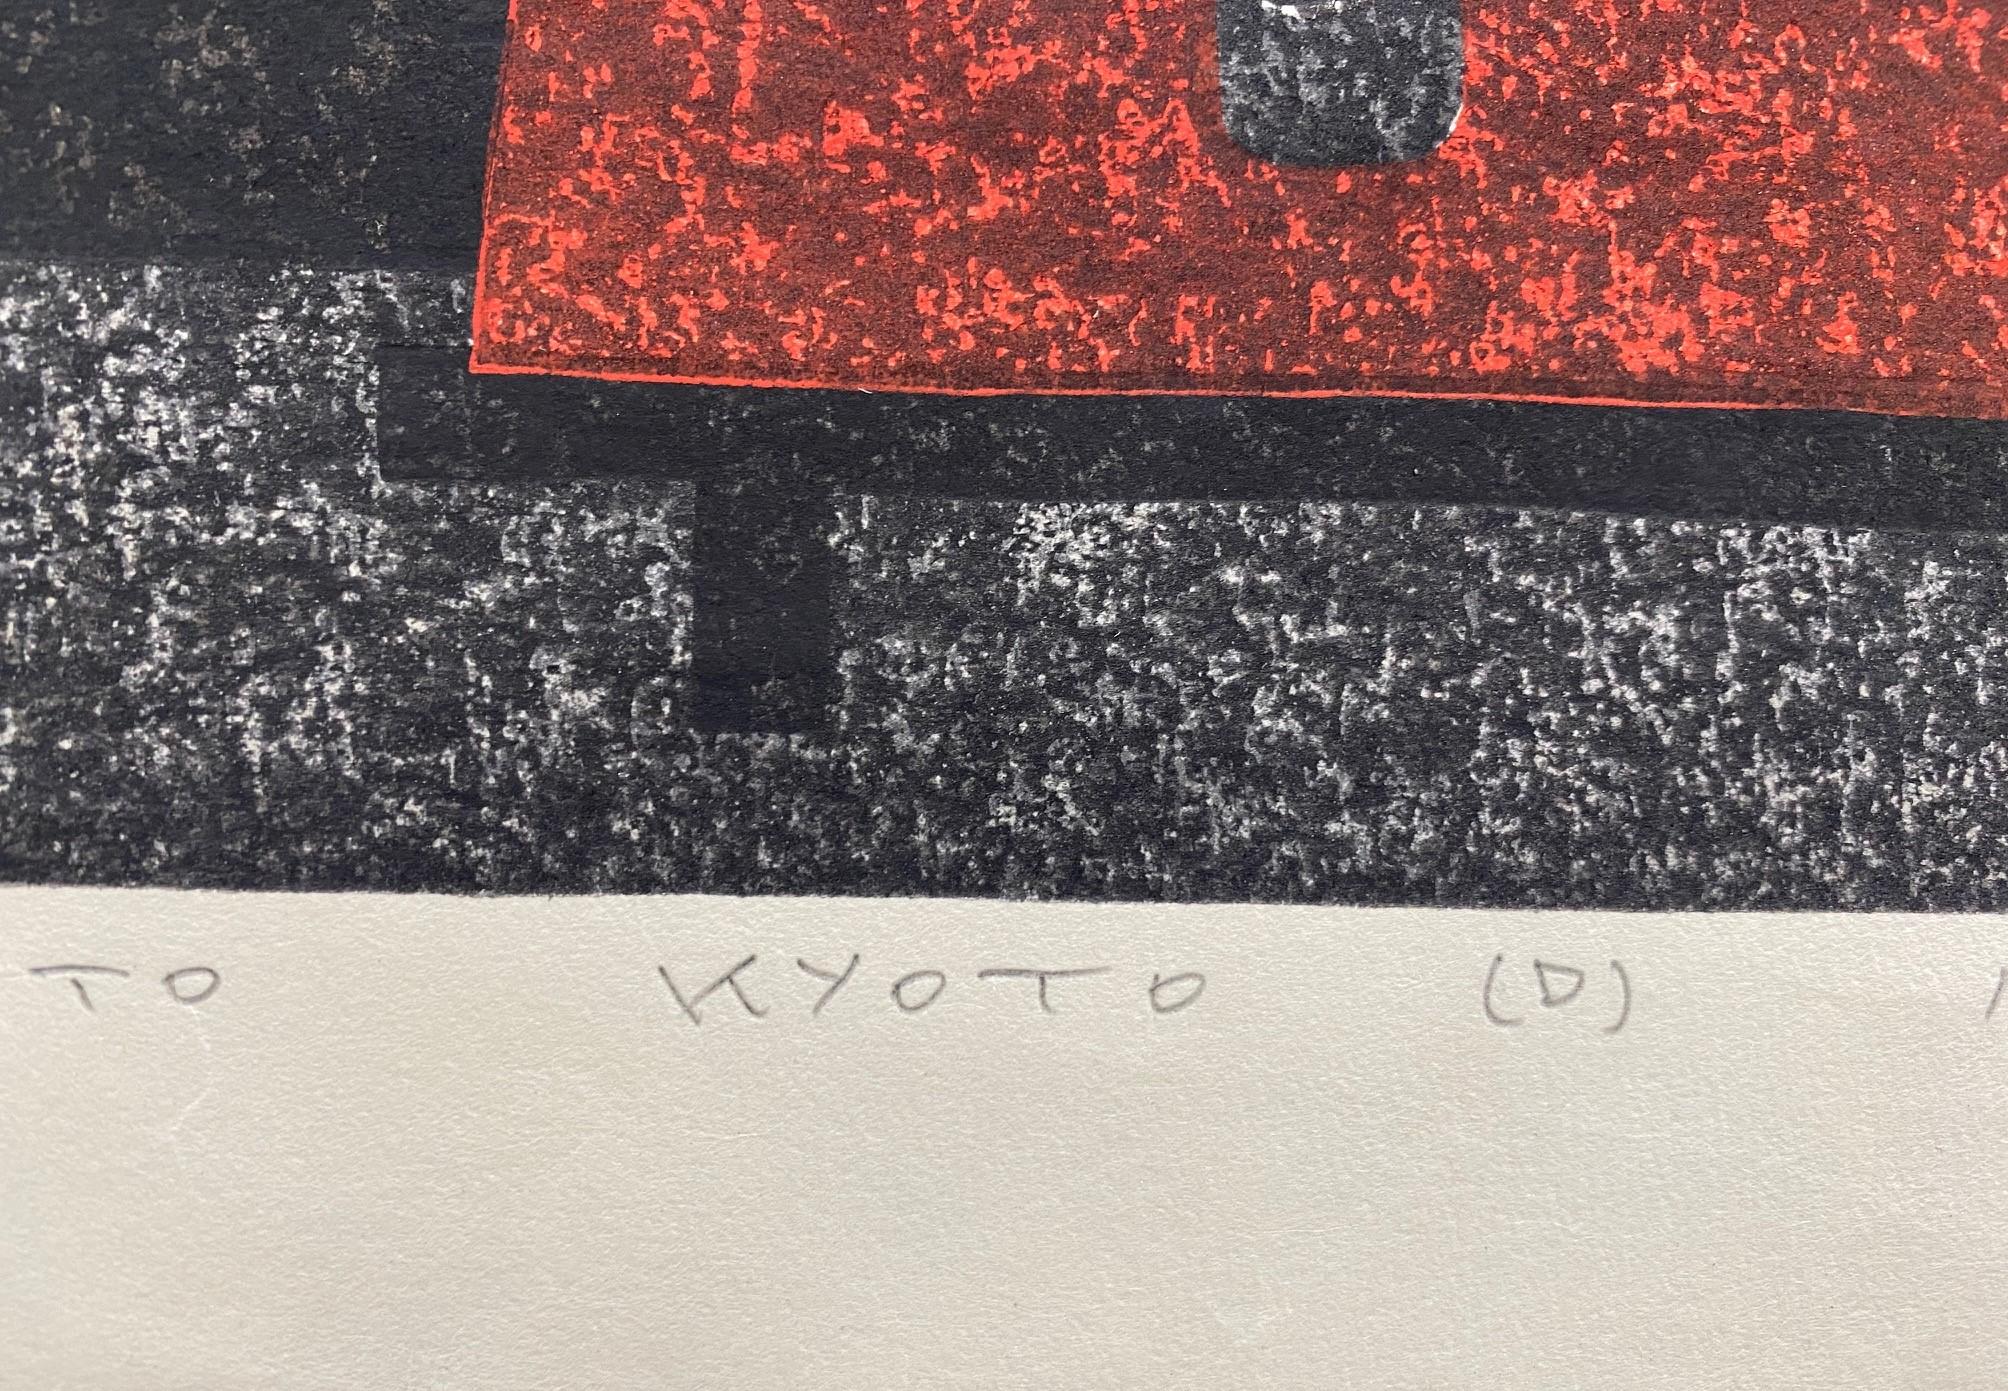 Kiyoshi Saito Signed Limited Edition Japanese Woodblock Print Toriemoto Kyoto D 4